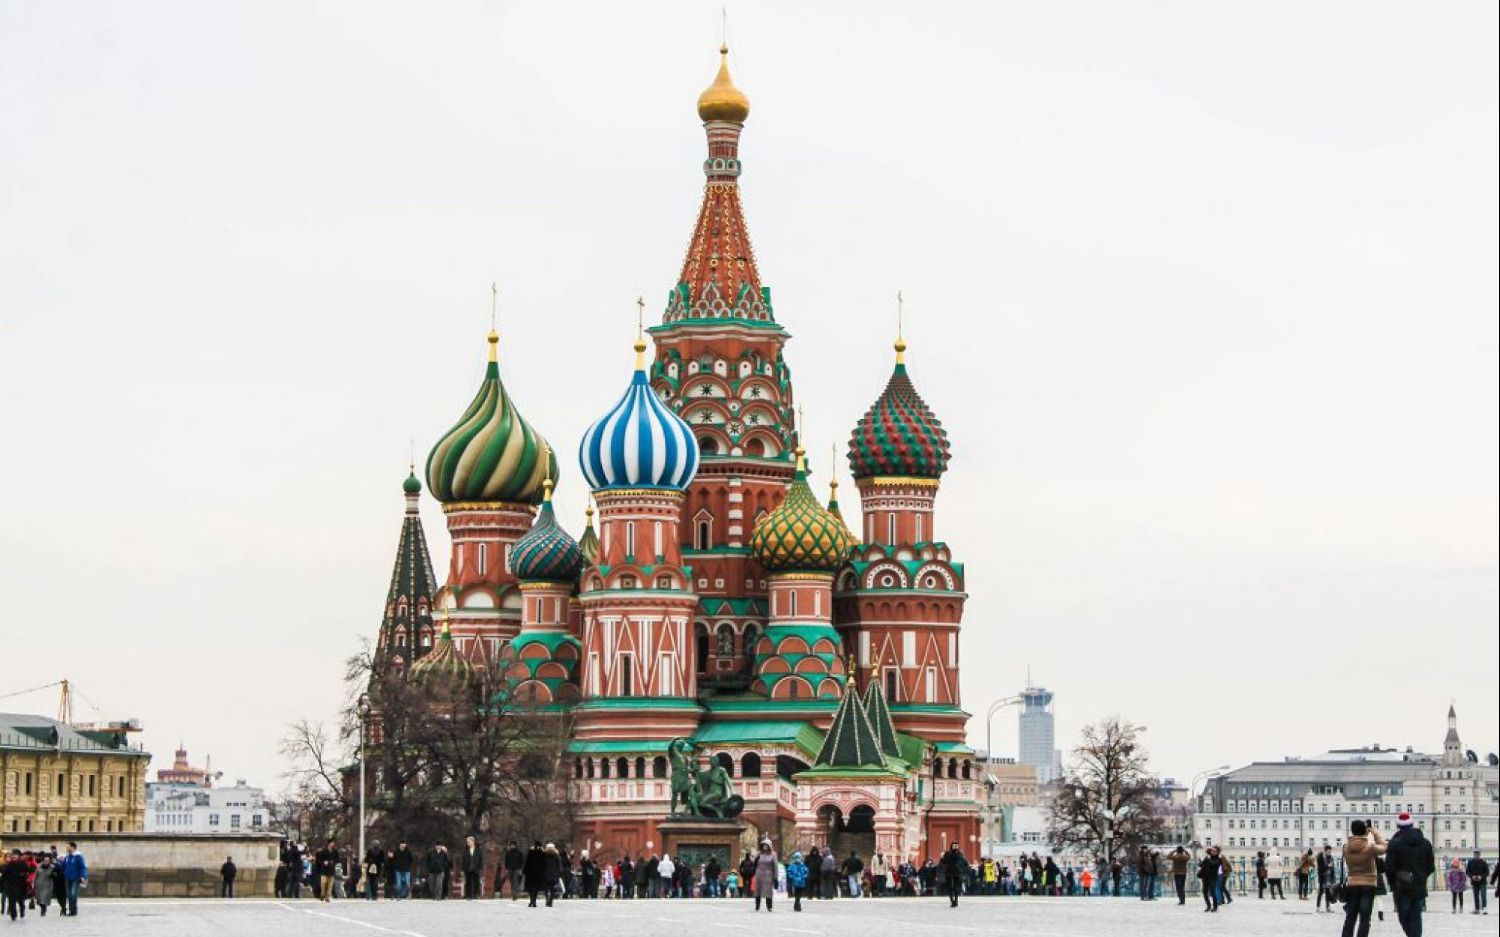 Museos imperdibles para visitar en Rusia - Imperdibles Museos